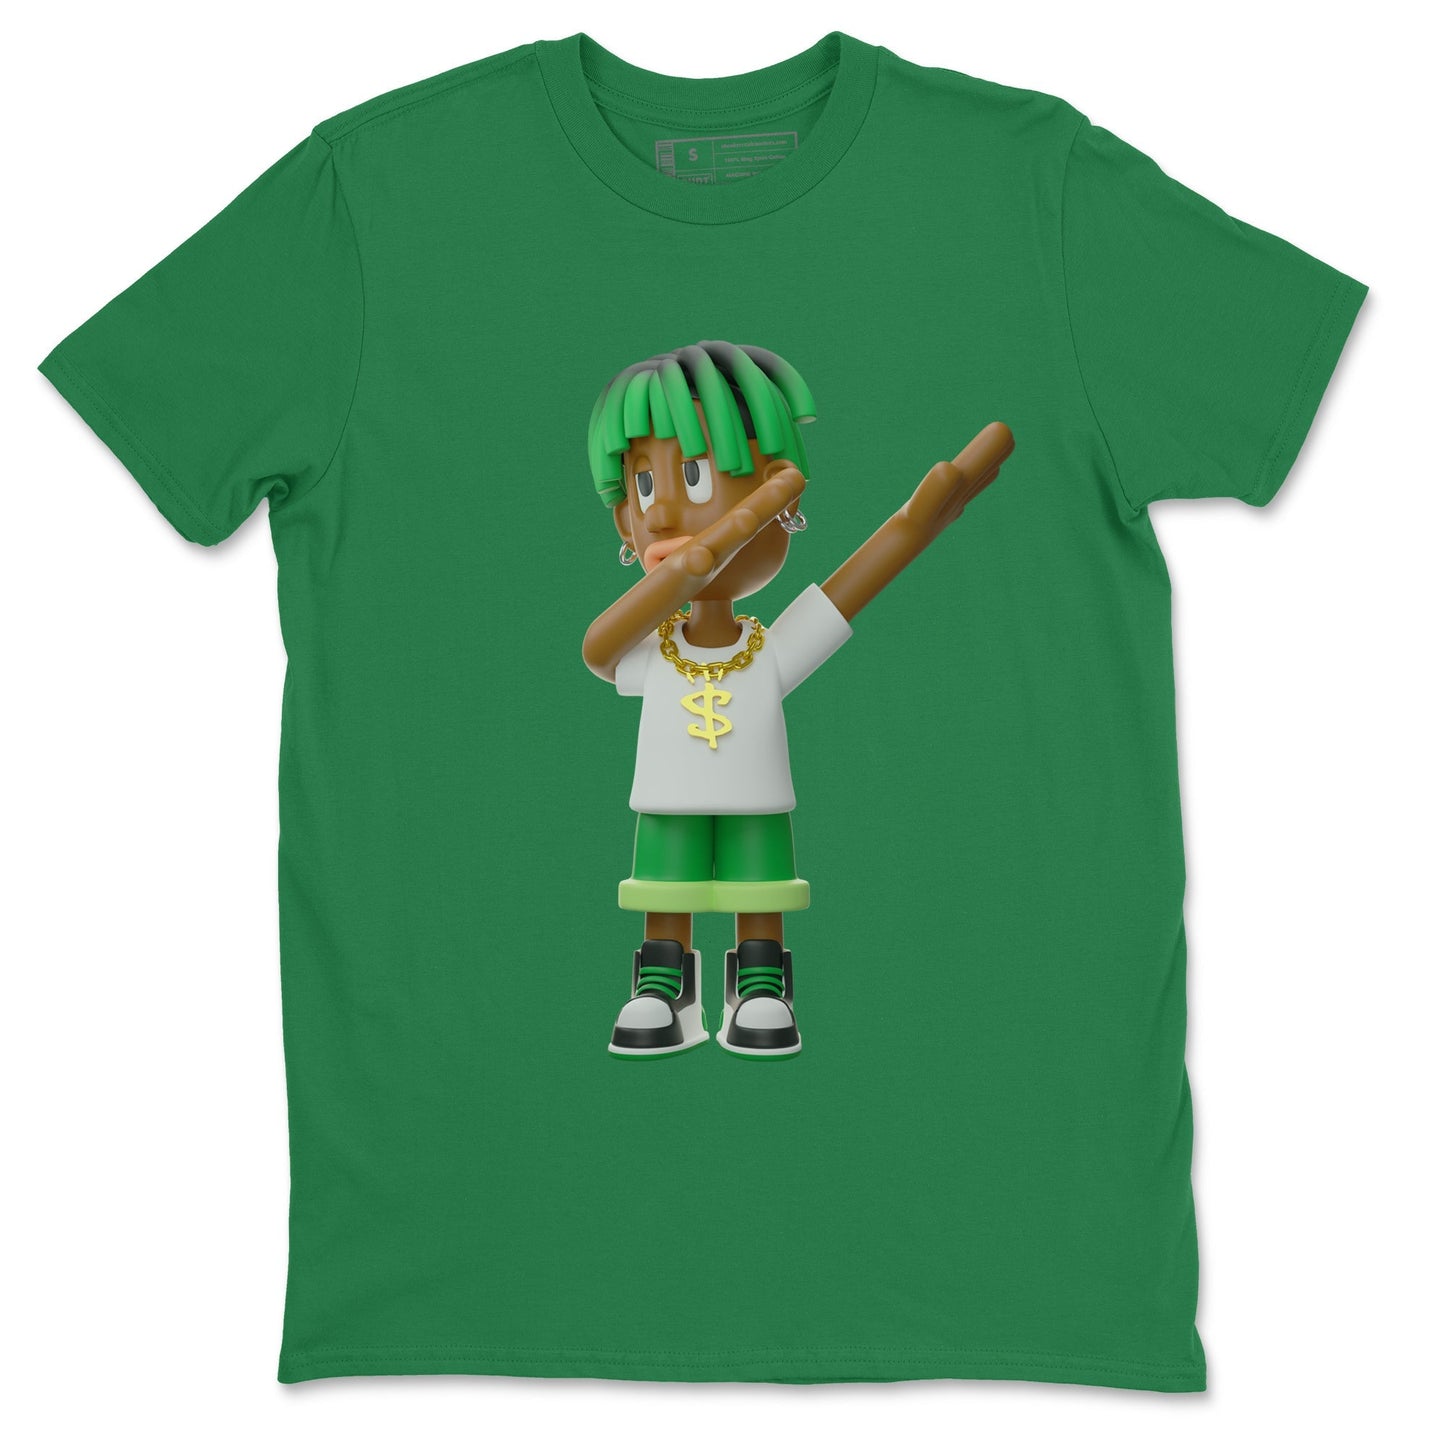 Air Jordan 1 Celtics Sneaker Tees Drip Gear Zone Get'em Boy Sneaker Tees AJ1 High OG Lucky Green Shirt Unisex Shirts Kelly Green 2